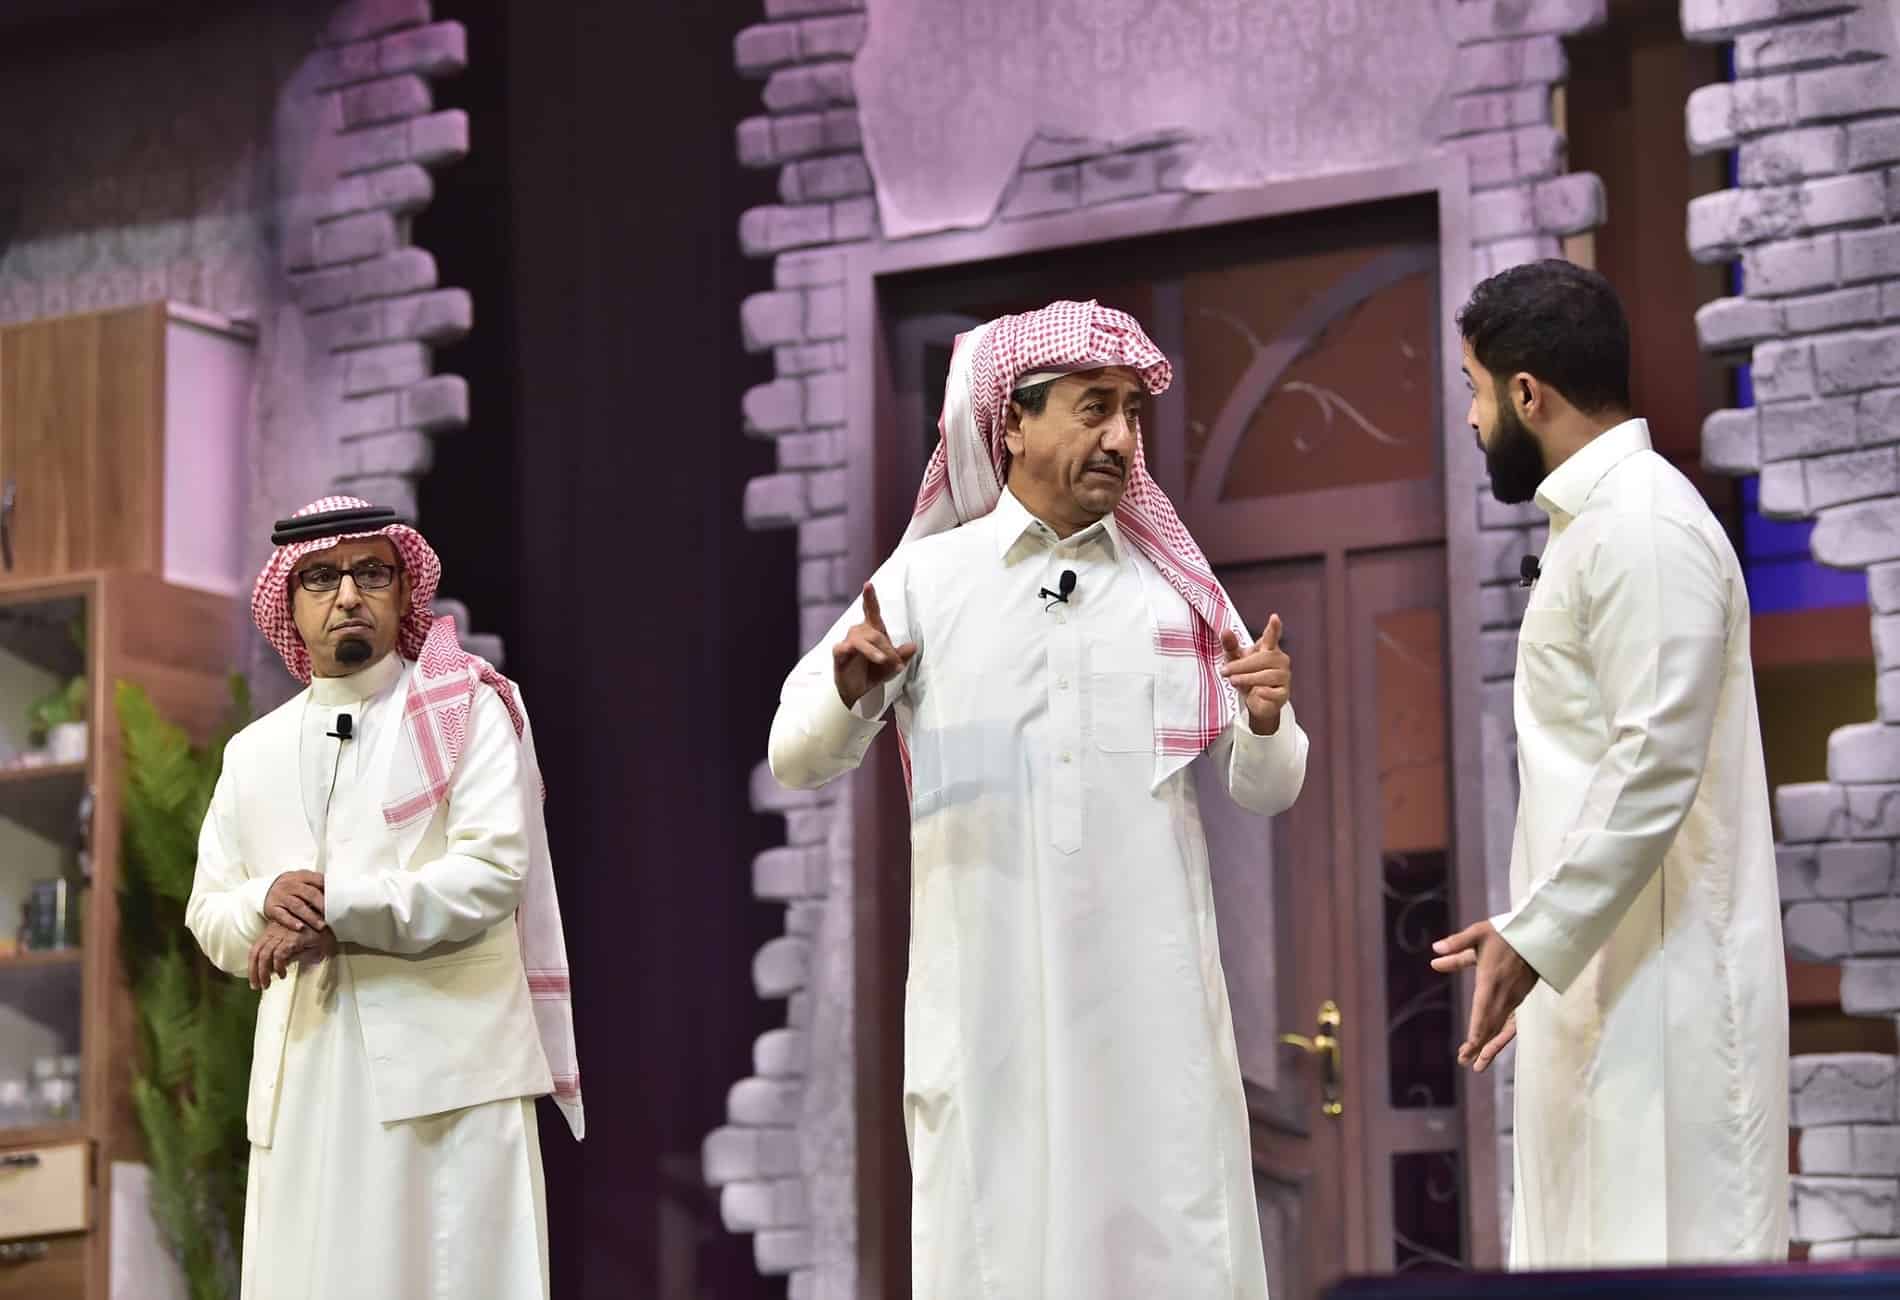 "عرب وود": تسابق على شراء تذاكر مسرحية ناصر القصبي